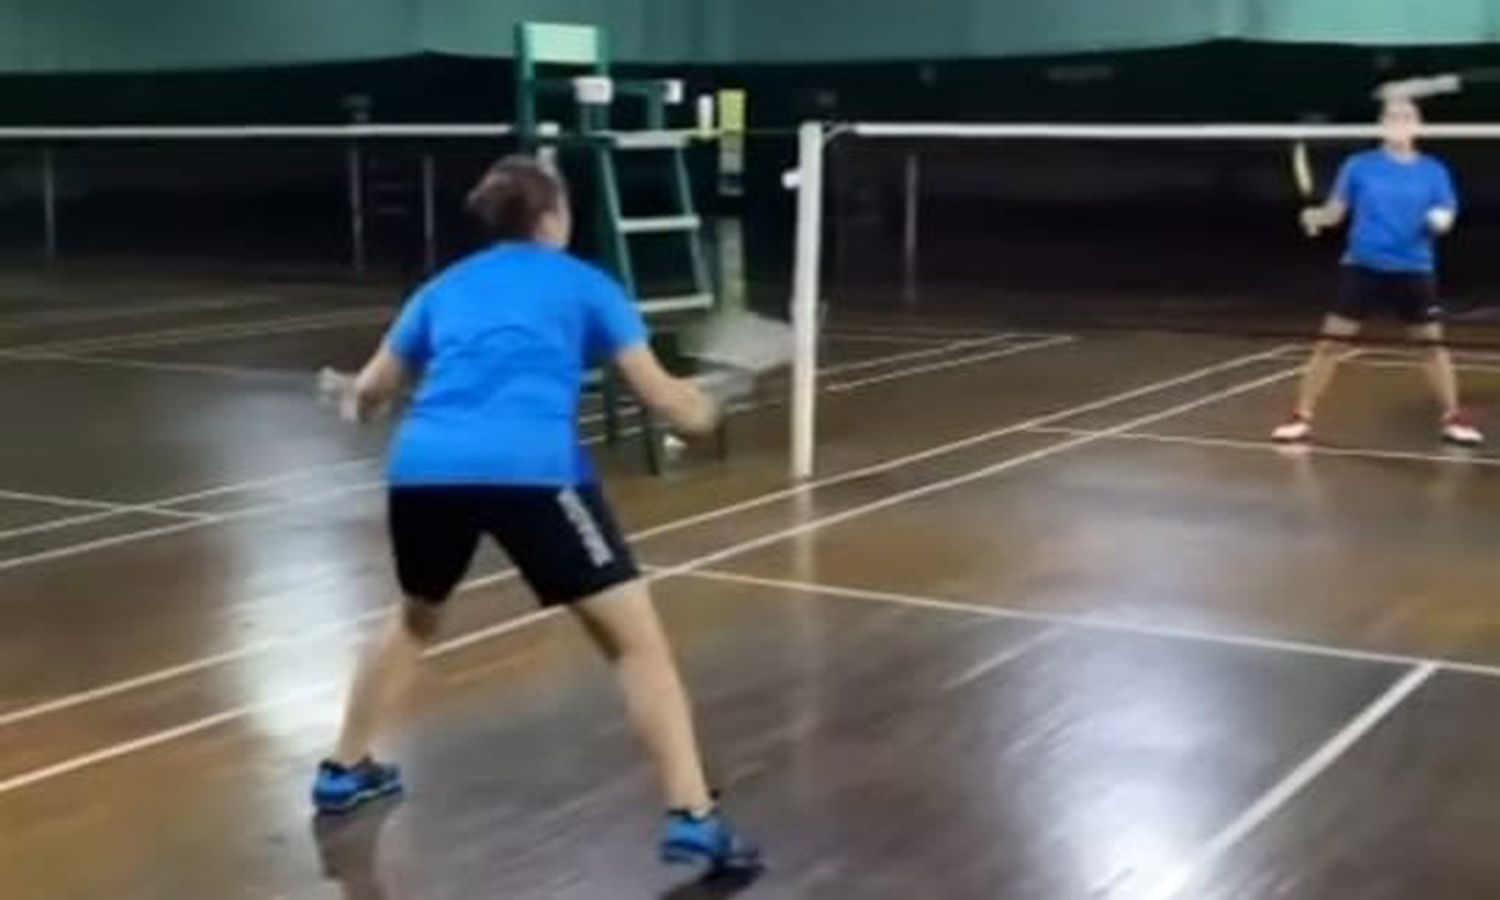 Praveen Jordan-Melati Daeva Mulai Latihan di PB Djarum, Sudah Resmi Keluar dari Pelatnas? Instagram/@pbdjarumofficial